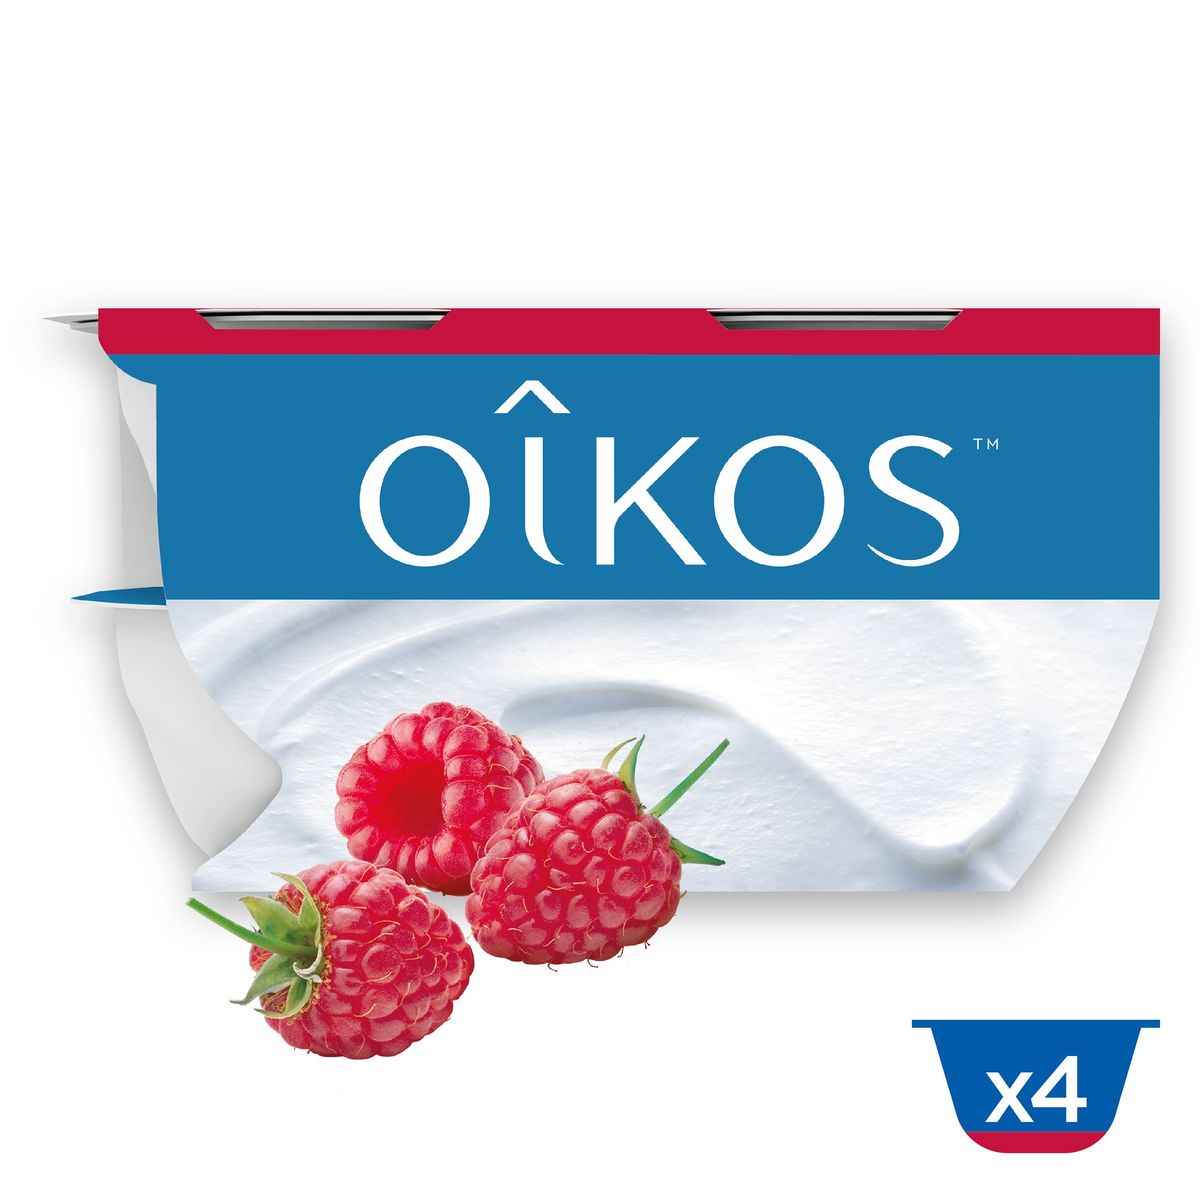 Oikos Yoghurt op Griekse Wijze Framboos 4 x 115 g